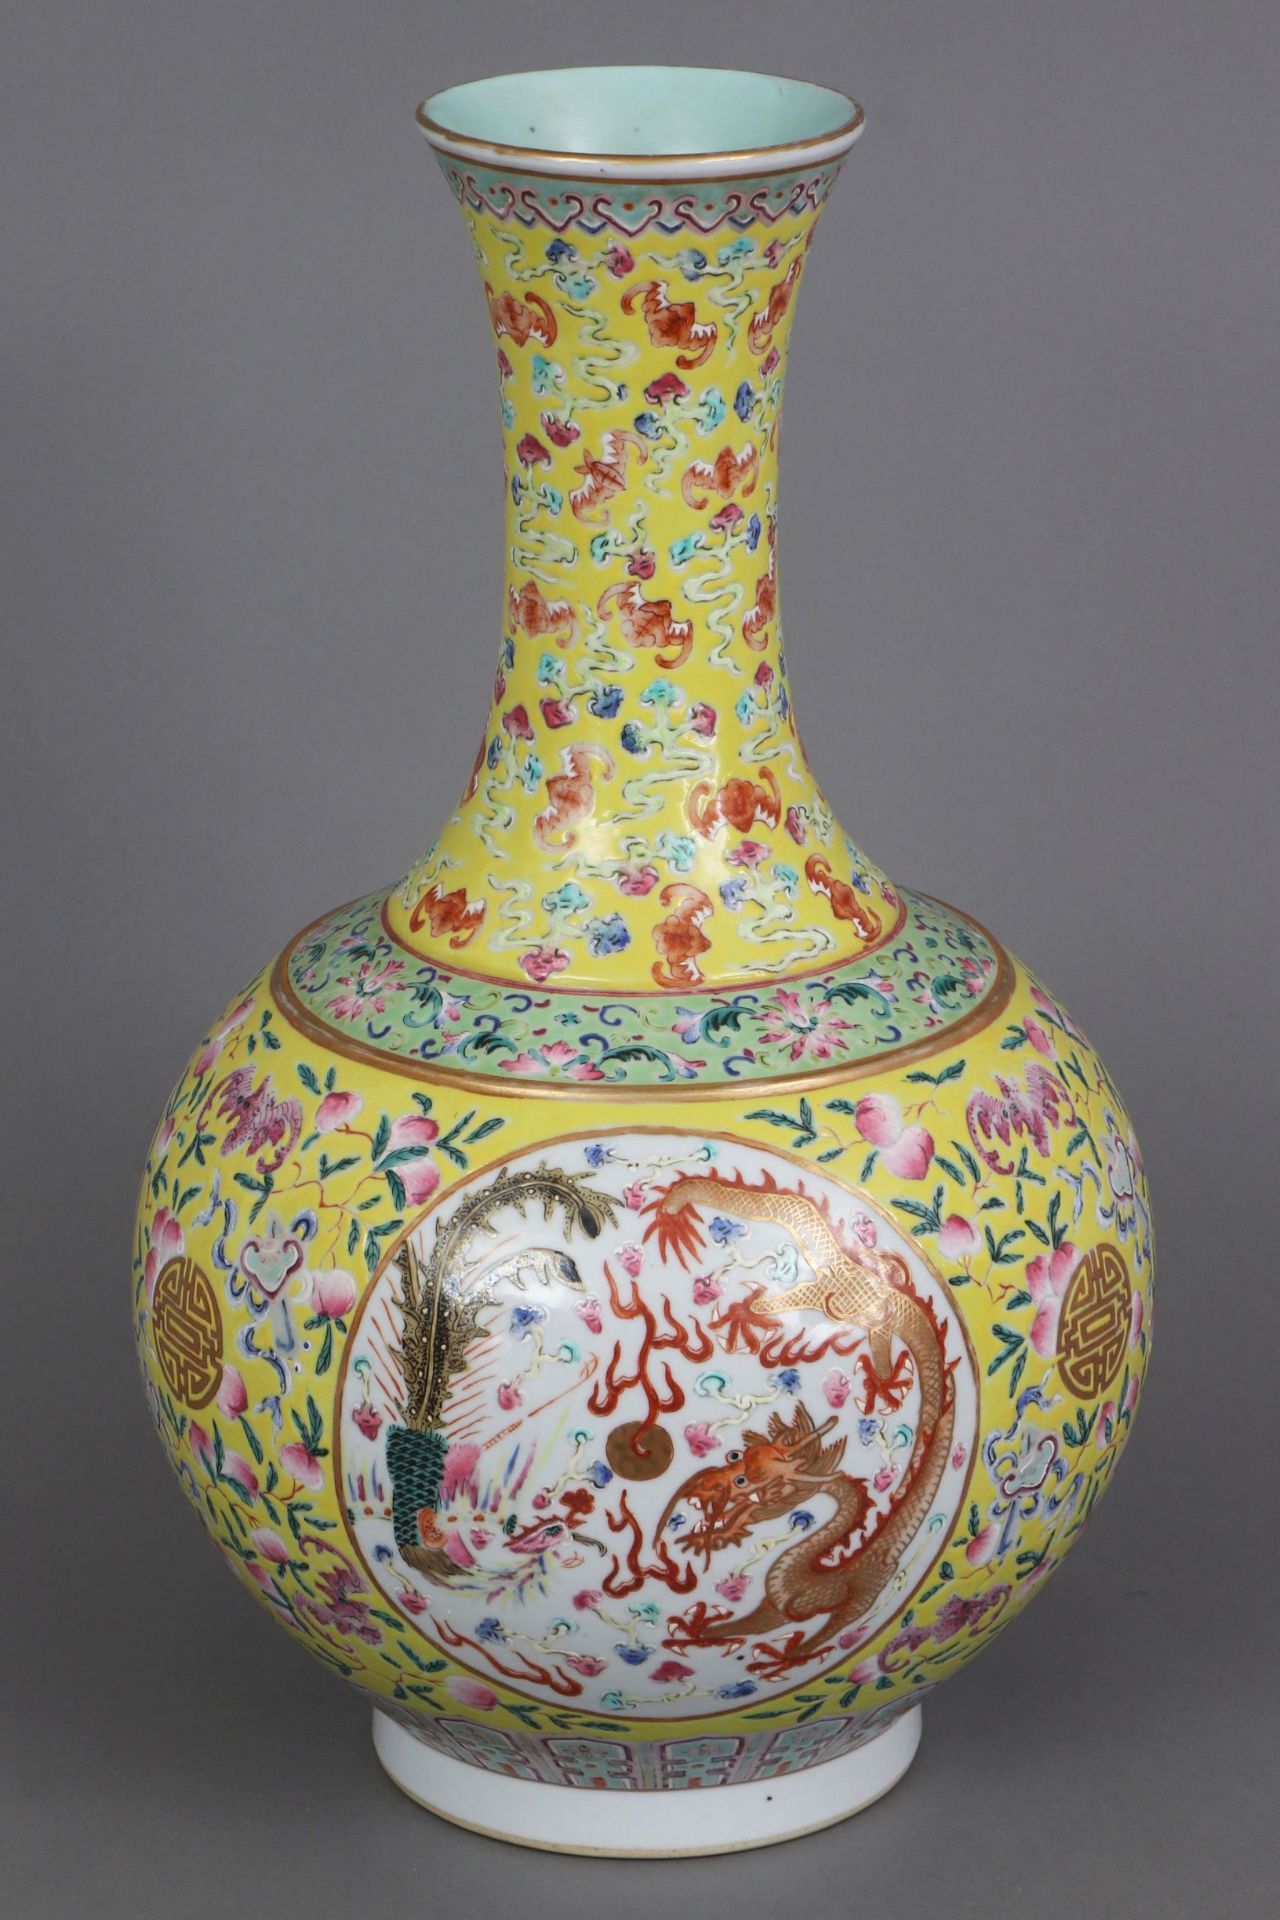 Chinesische Porzellanvase mit Drachendekor auf gelbem Grund